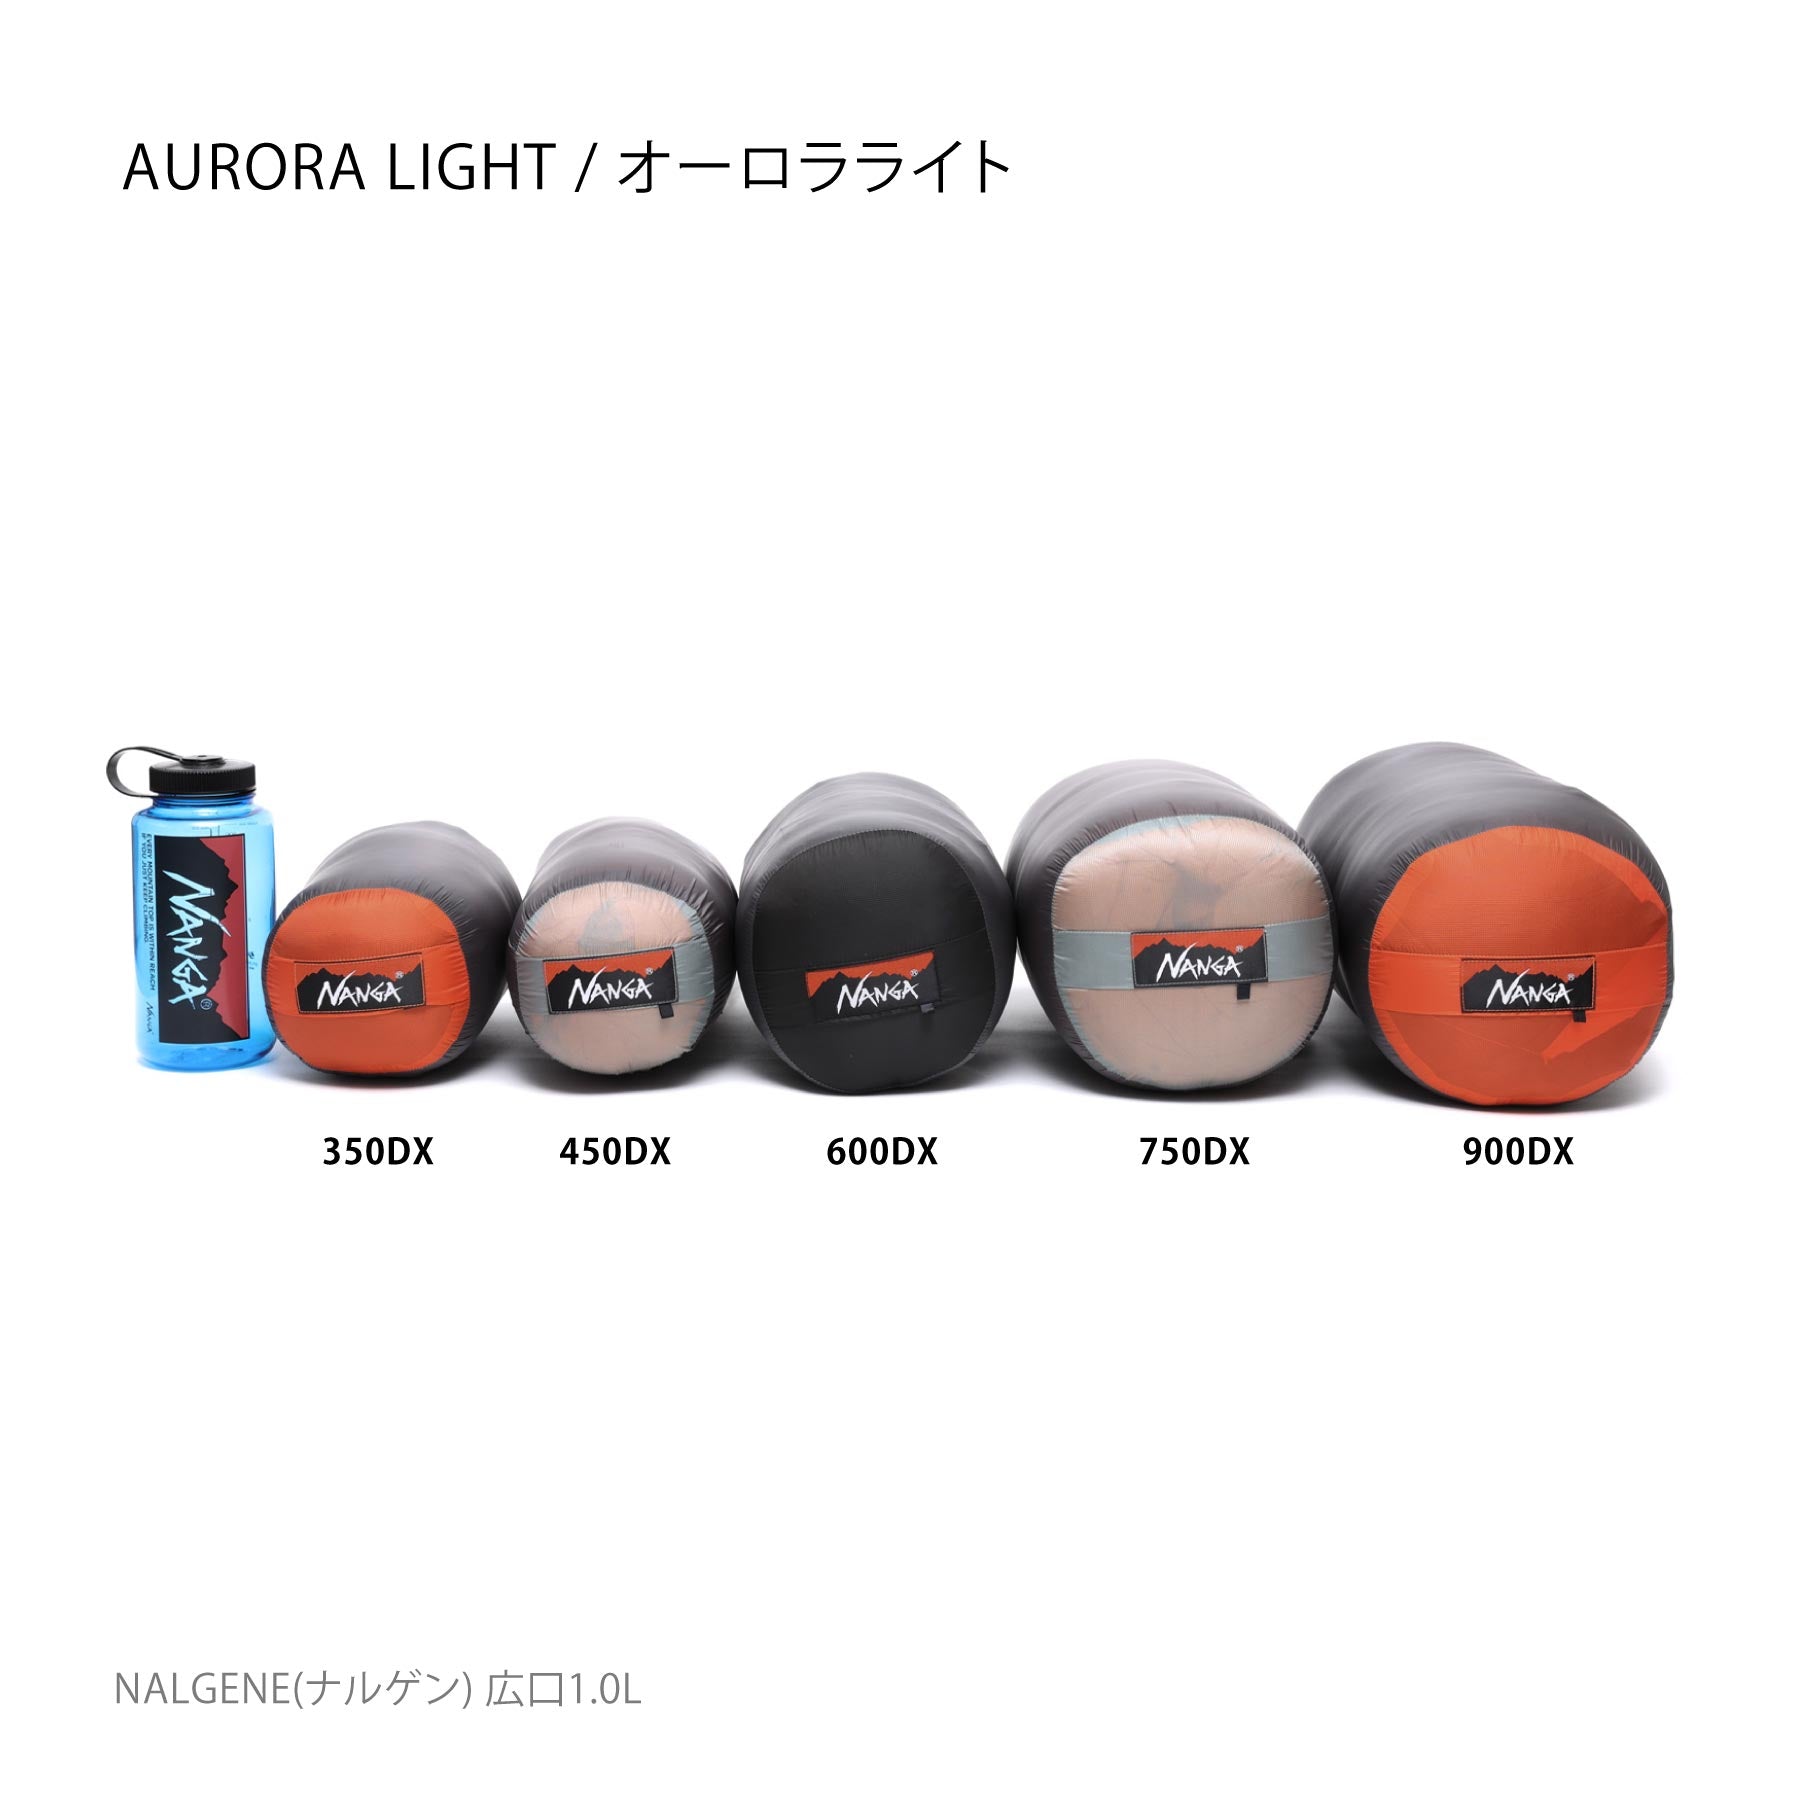 ナンガ オーロラライト450DX ロング NANGA AURORA light